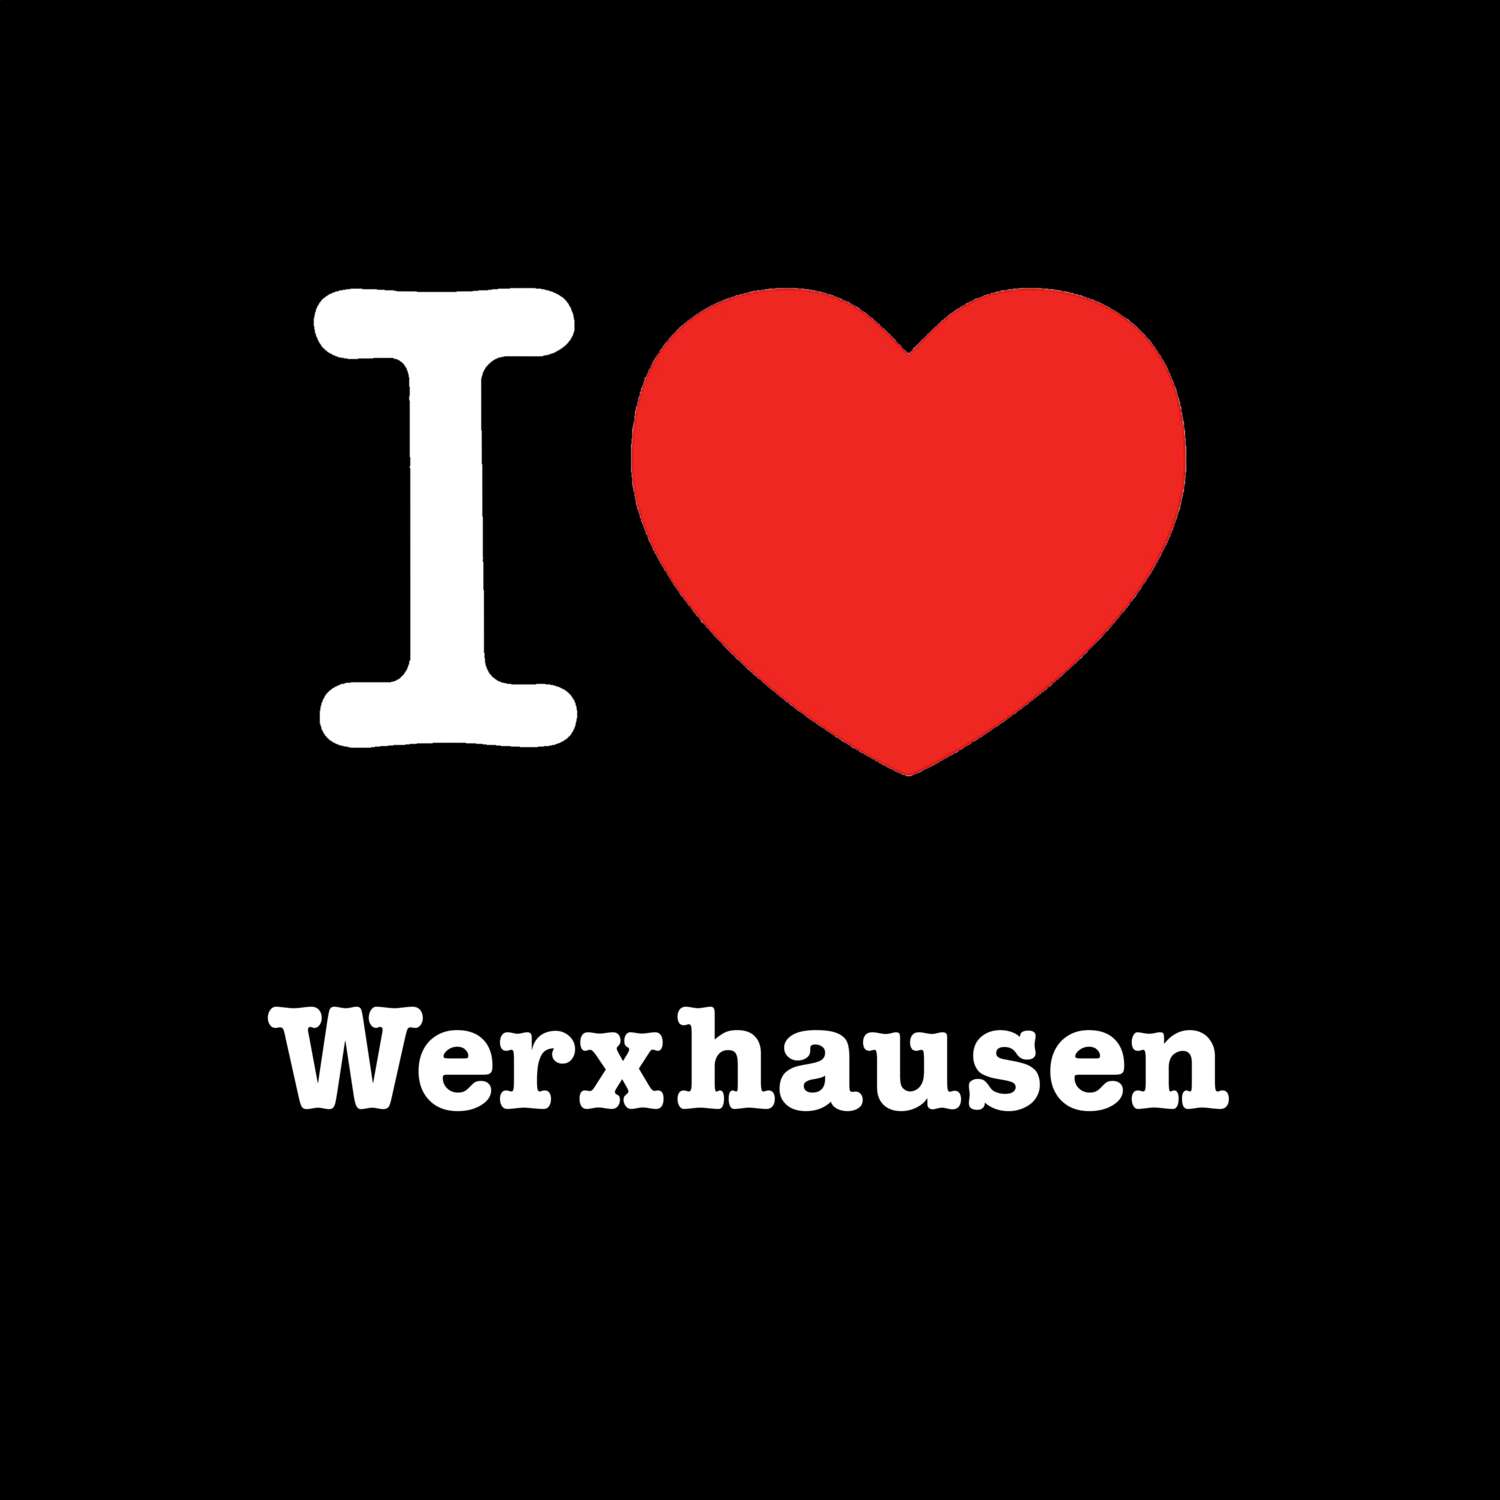 Werxhausen T-Shirt »I love«